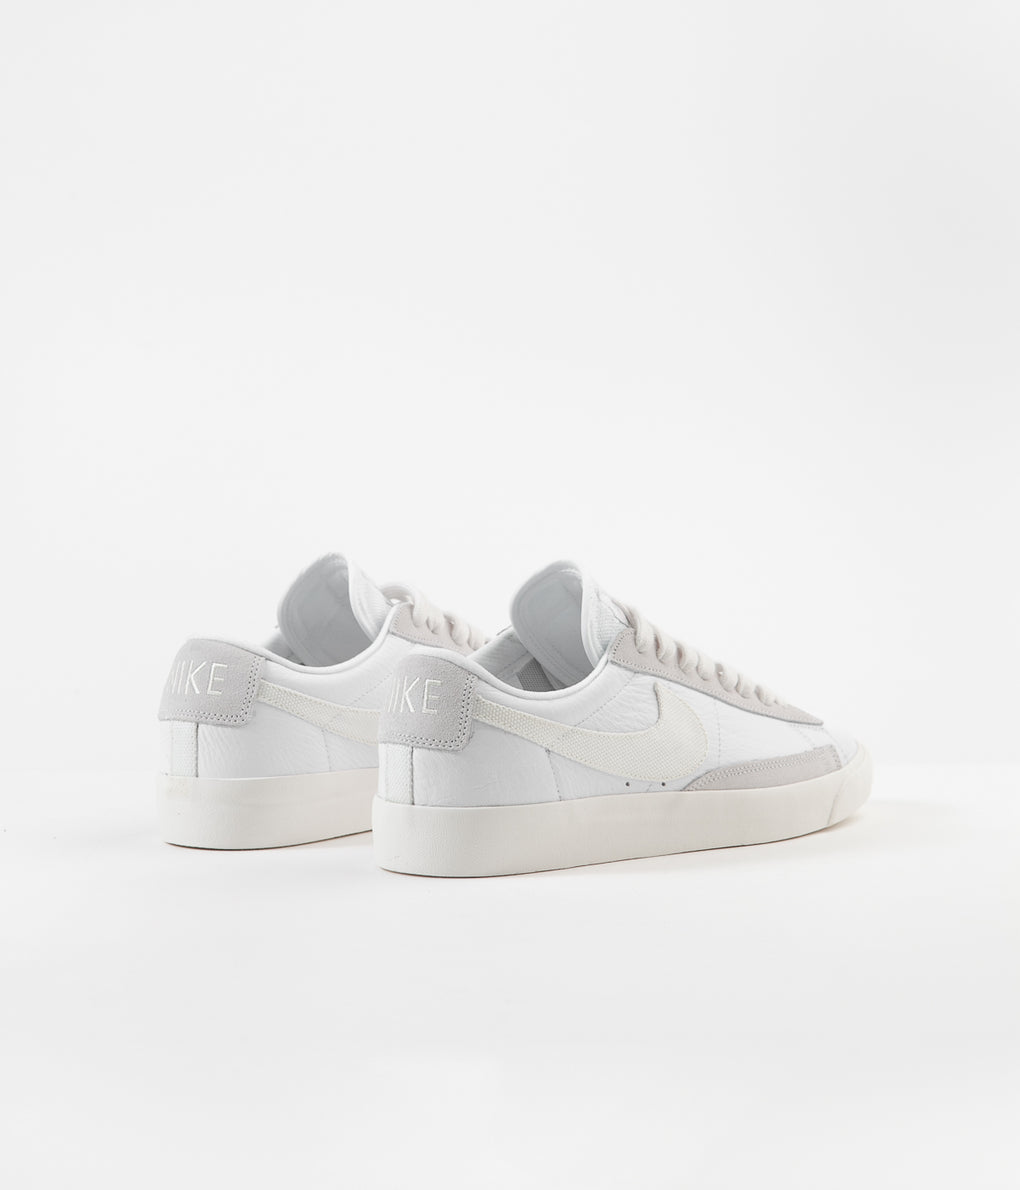 Nike Blazer Low Leather Shoes - White / Sail - Platinum Tint | Always ...